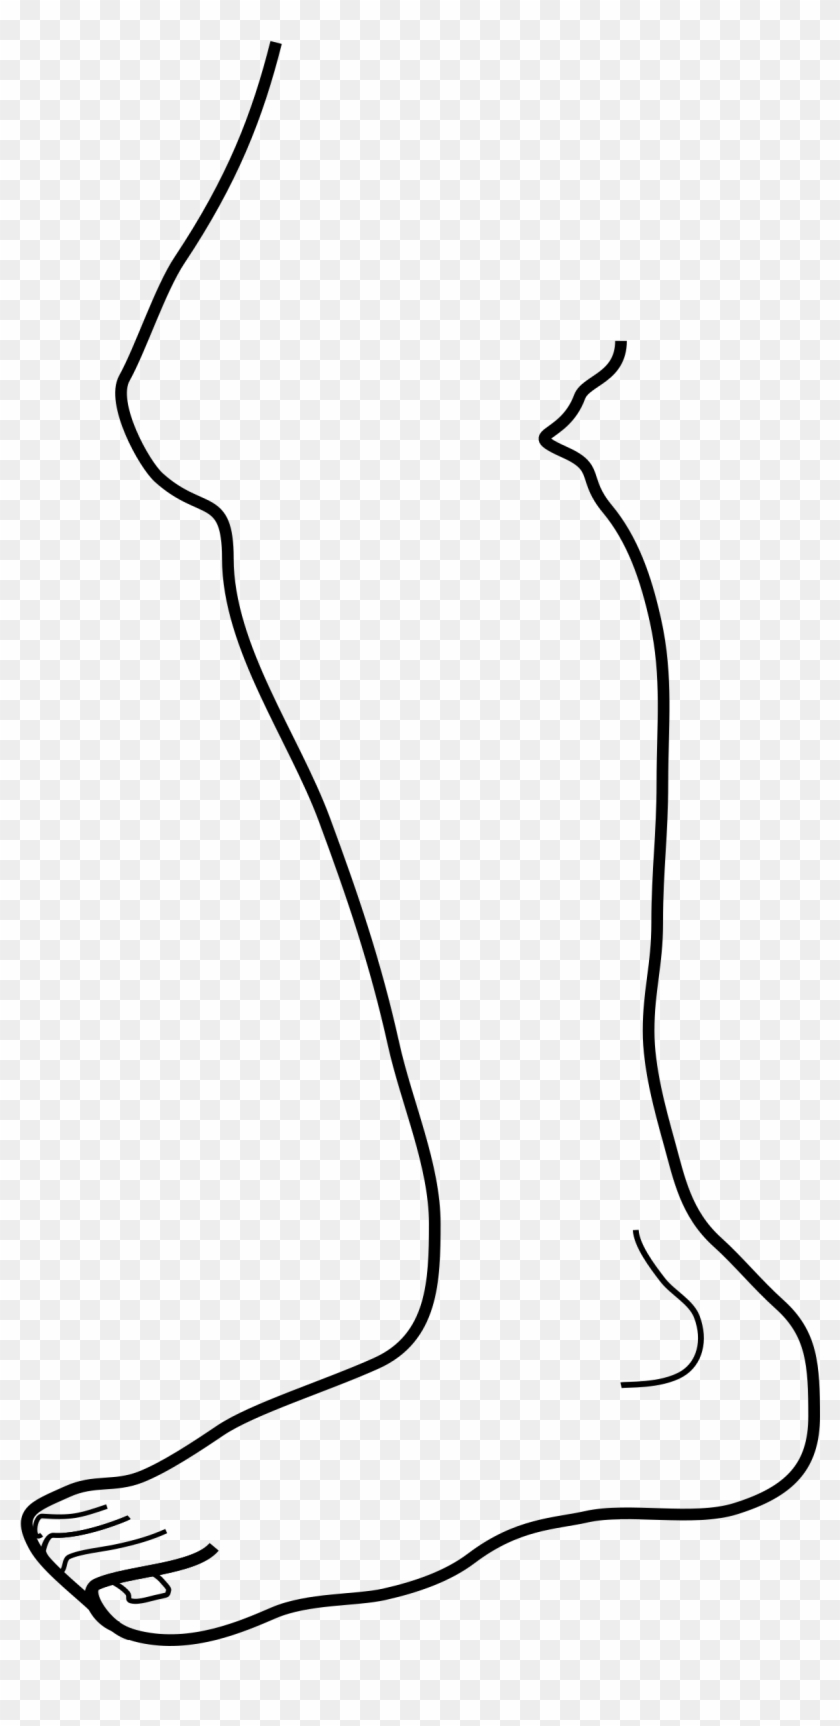 Clipart Of Leg - Leg Clip Art #886254